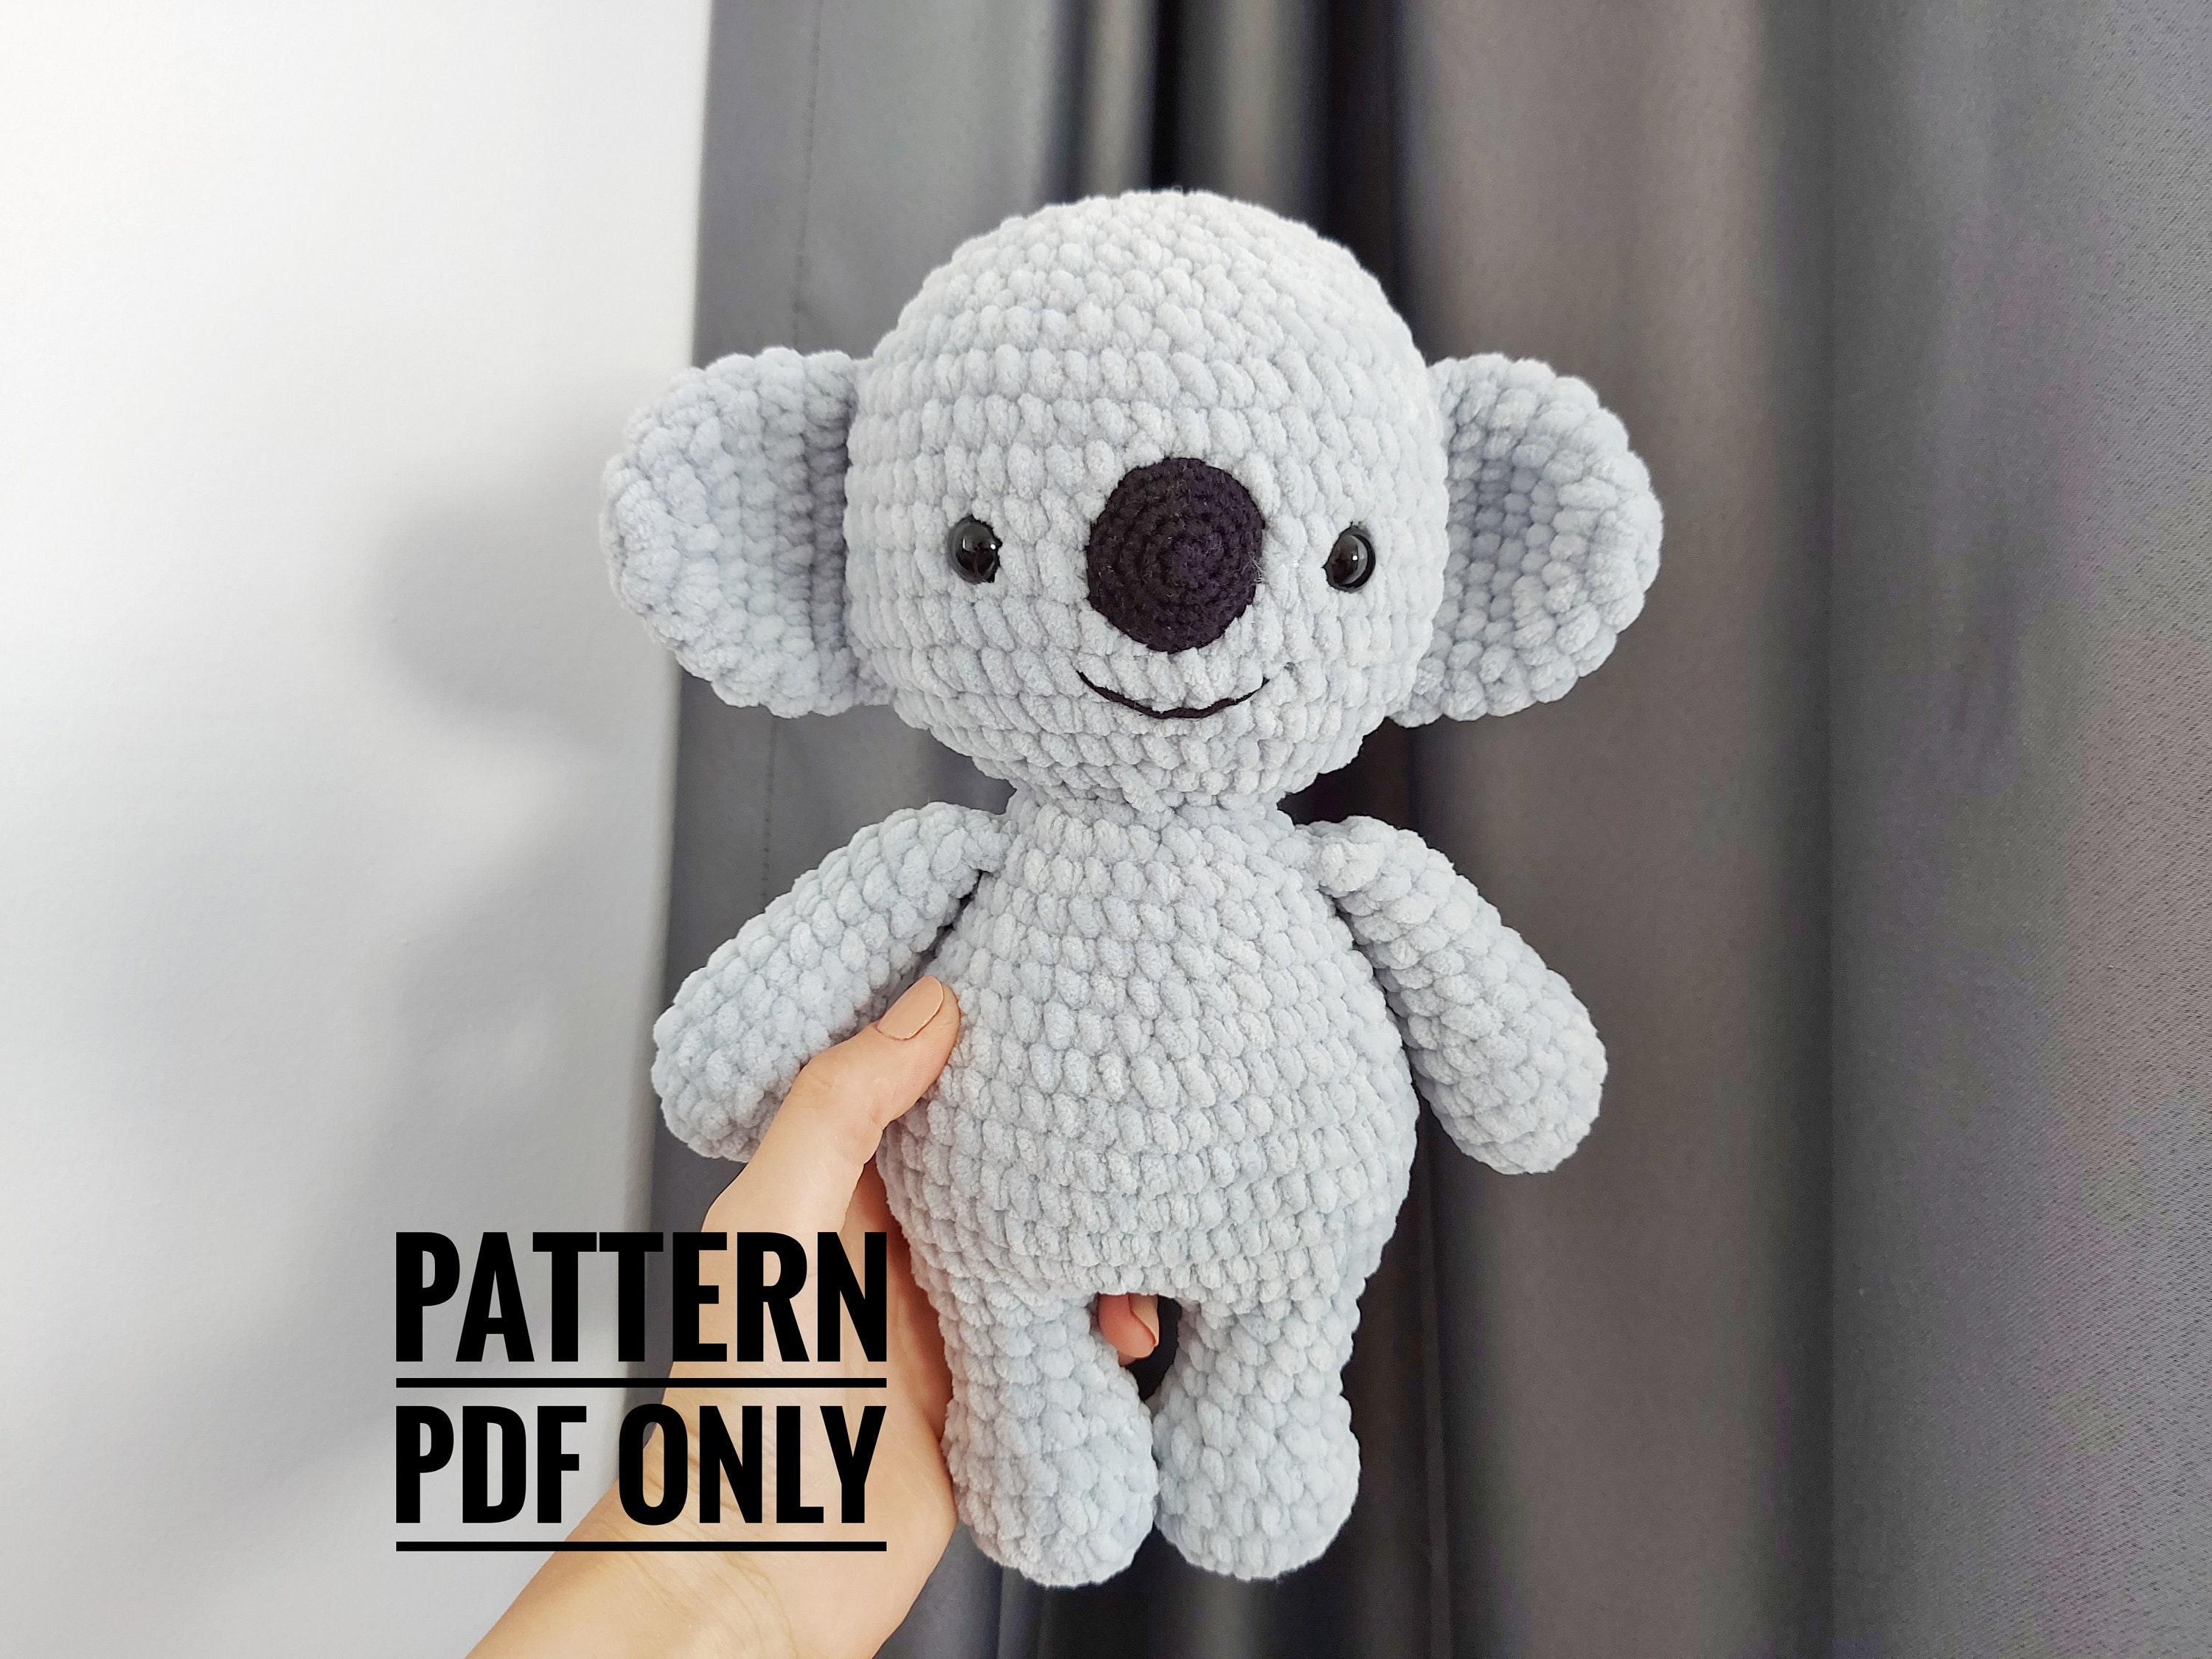 Koala Crochet Kit – gather here online